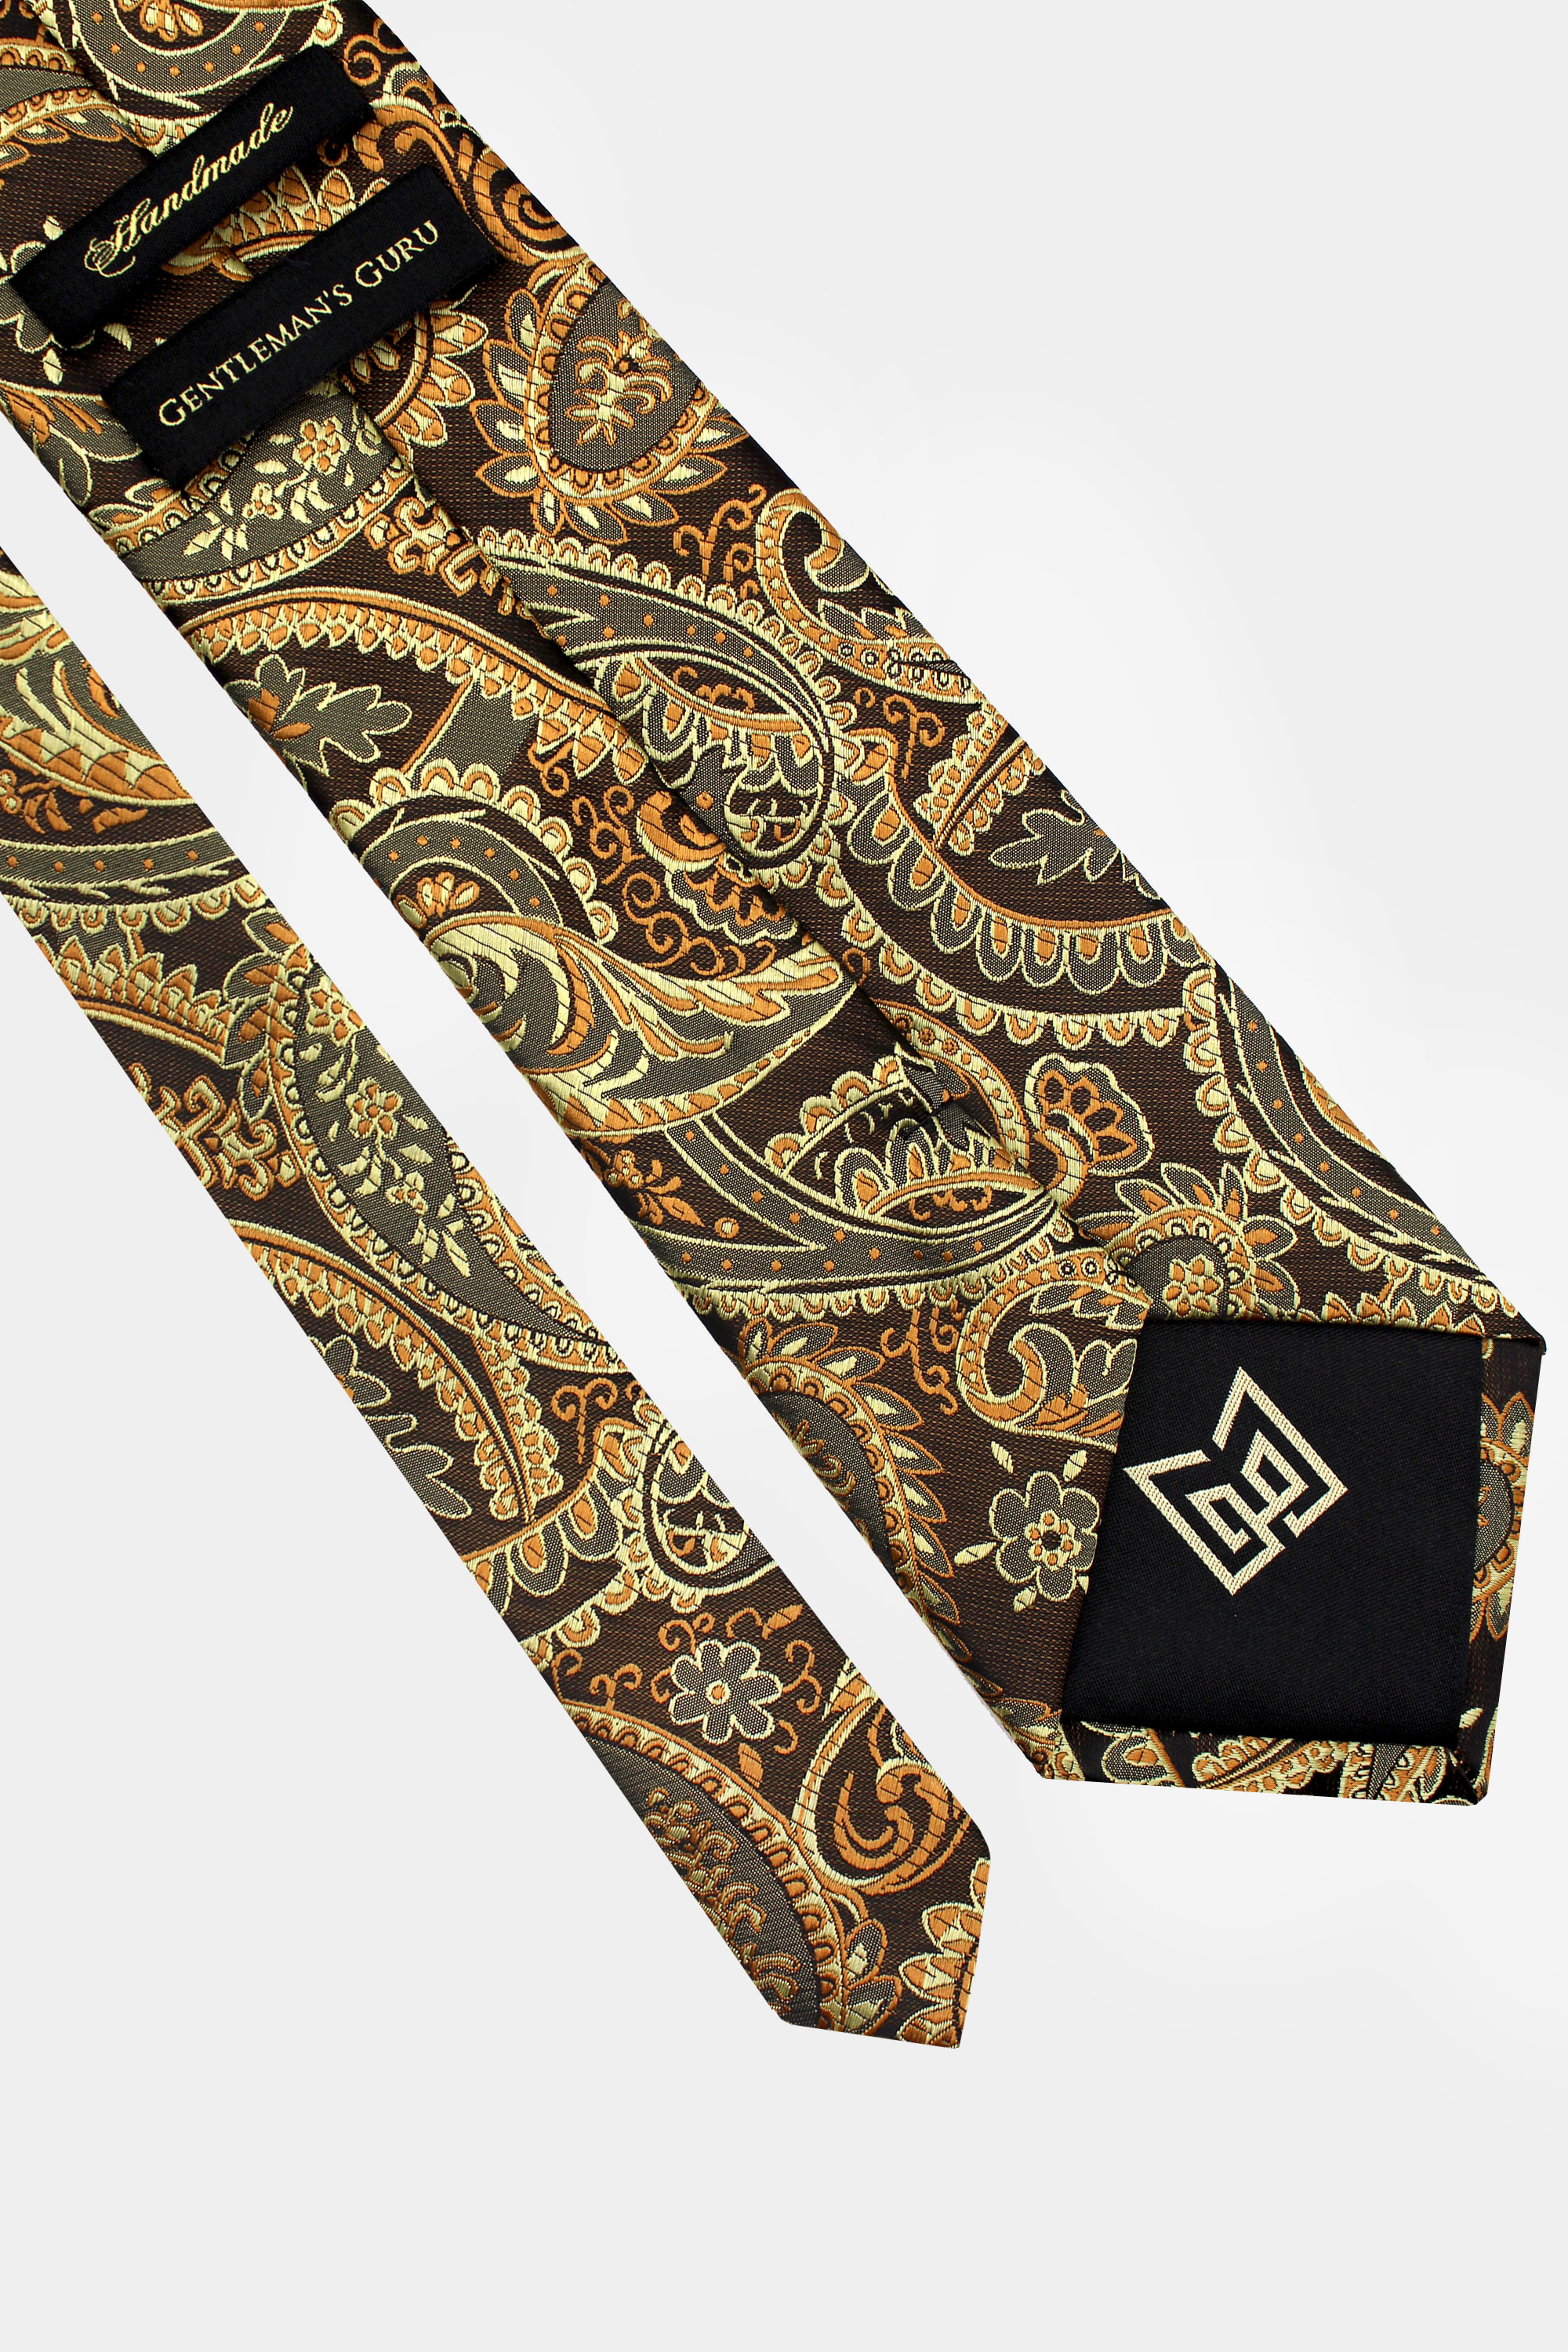 Gold-Paisley-Tie-from-Gentlemansguru.com